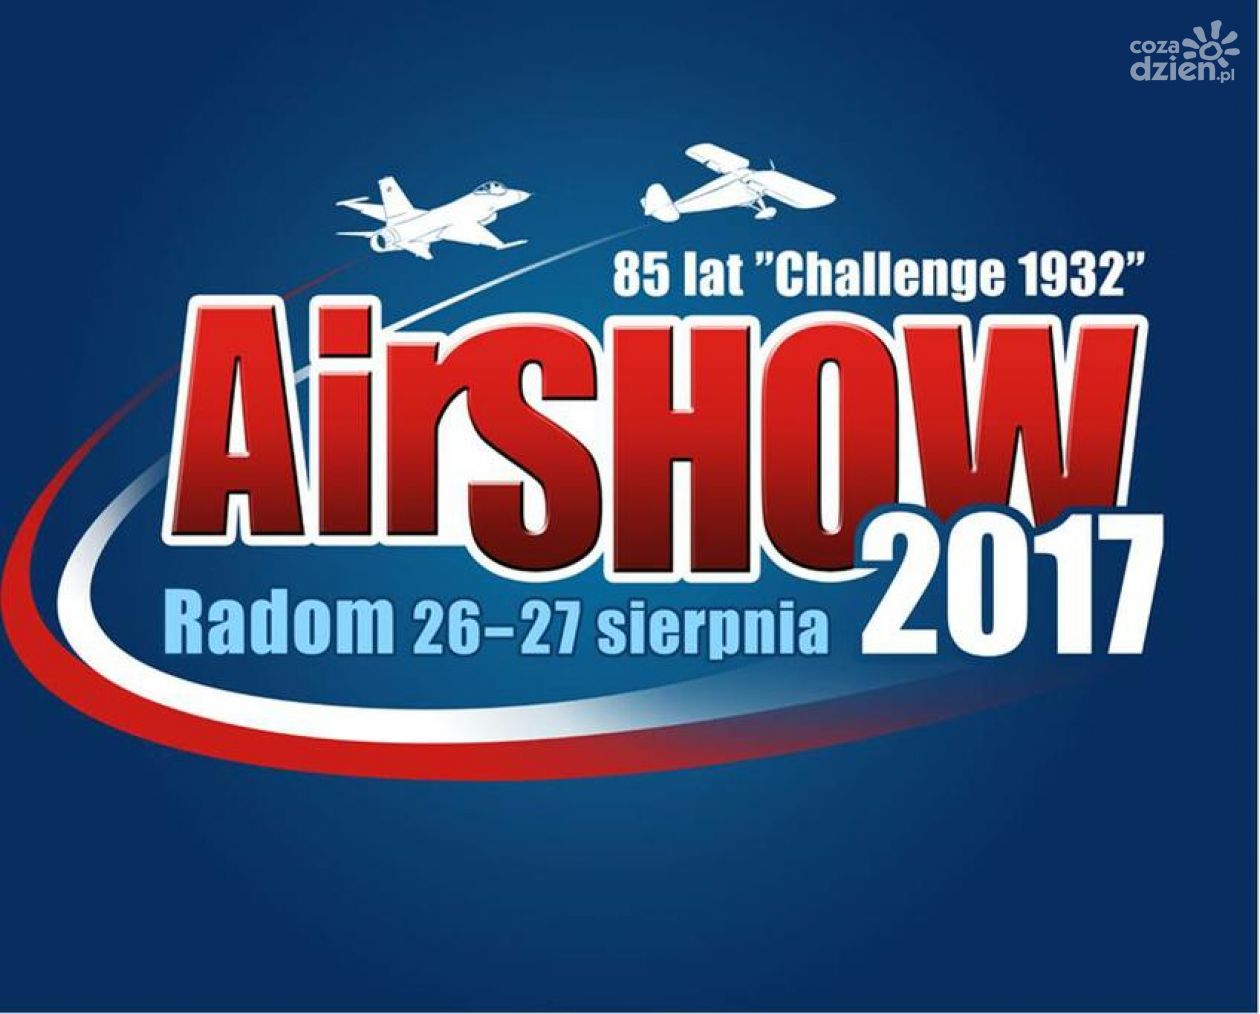 AIR SHOW 2017